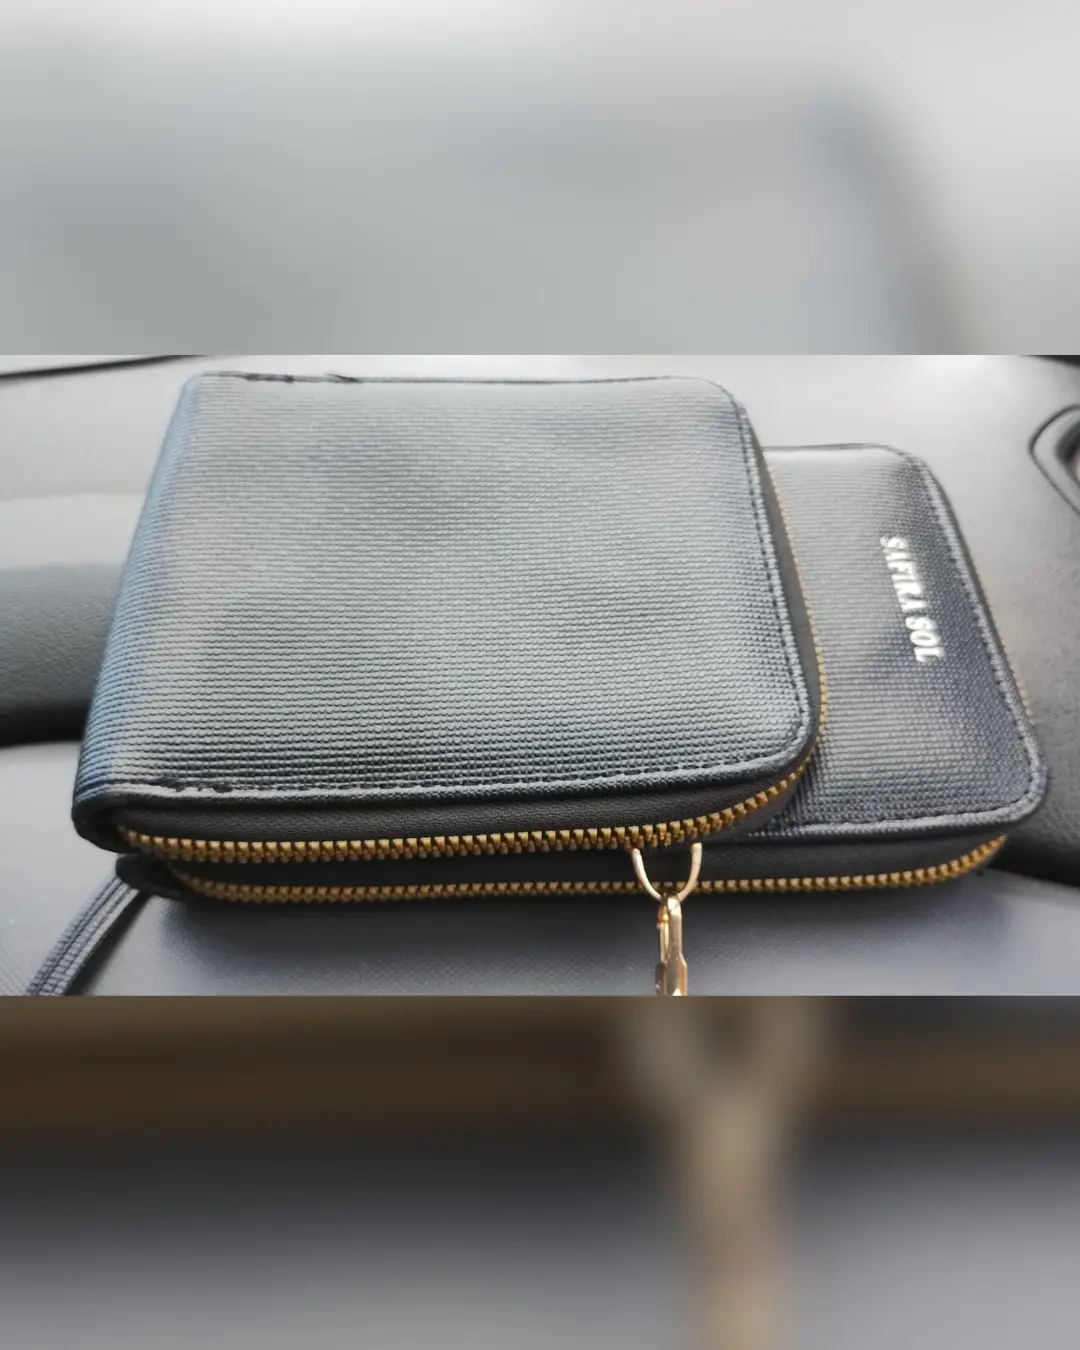 Imagem de destaque - Motorista de aplicativo pede ajuda para encontrar proprietária de bolsa esquecida no carro